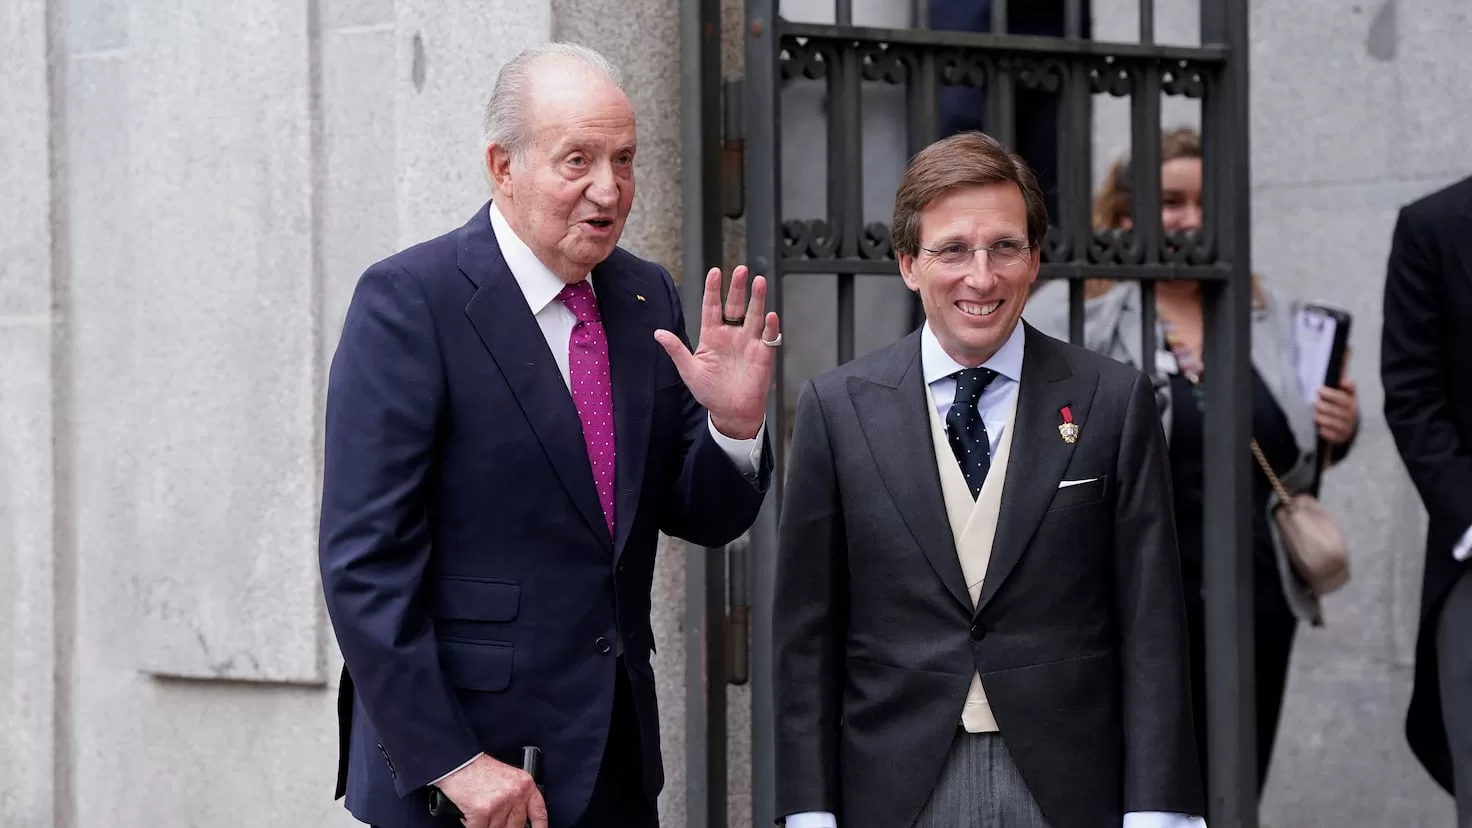 What relationship is there between Teresa Urquijo and King Emeritus Juan Carlos I?
